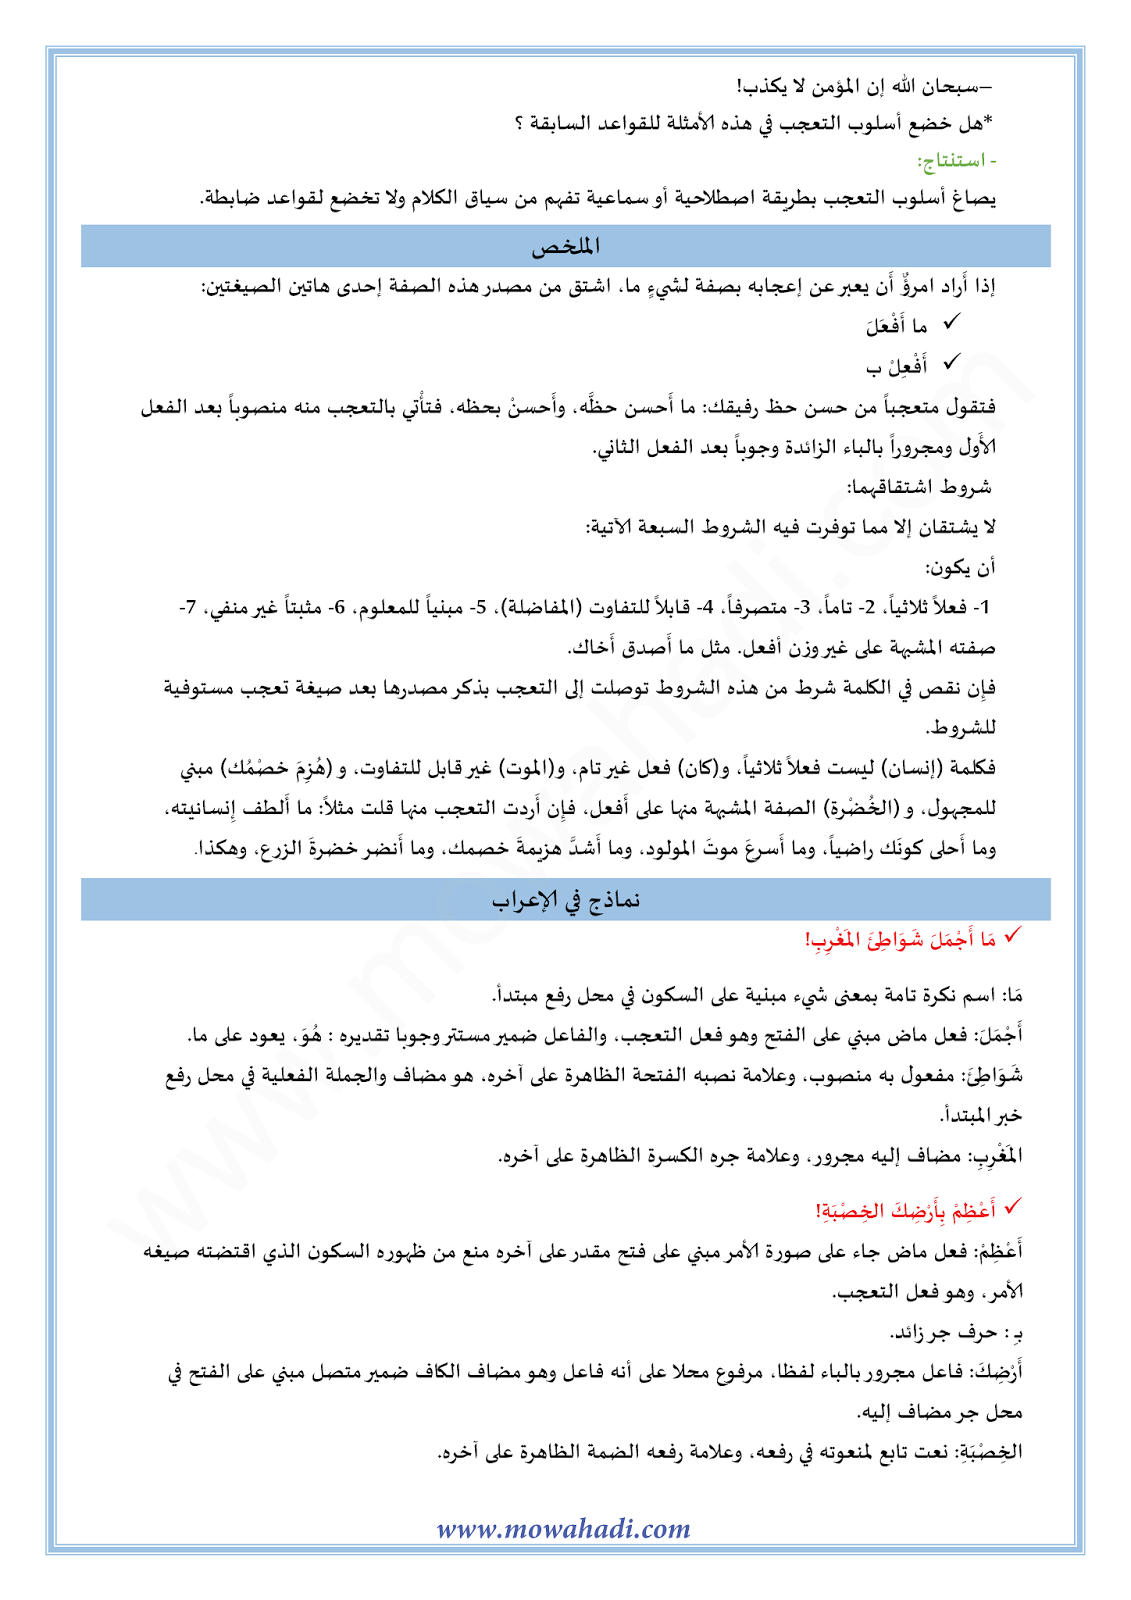 الدرس اللغوي أسلوب التعجب للسنة الثالثة اعدادي في مادة اللغة العربية 9-cours-dars-loghawi3_002